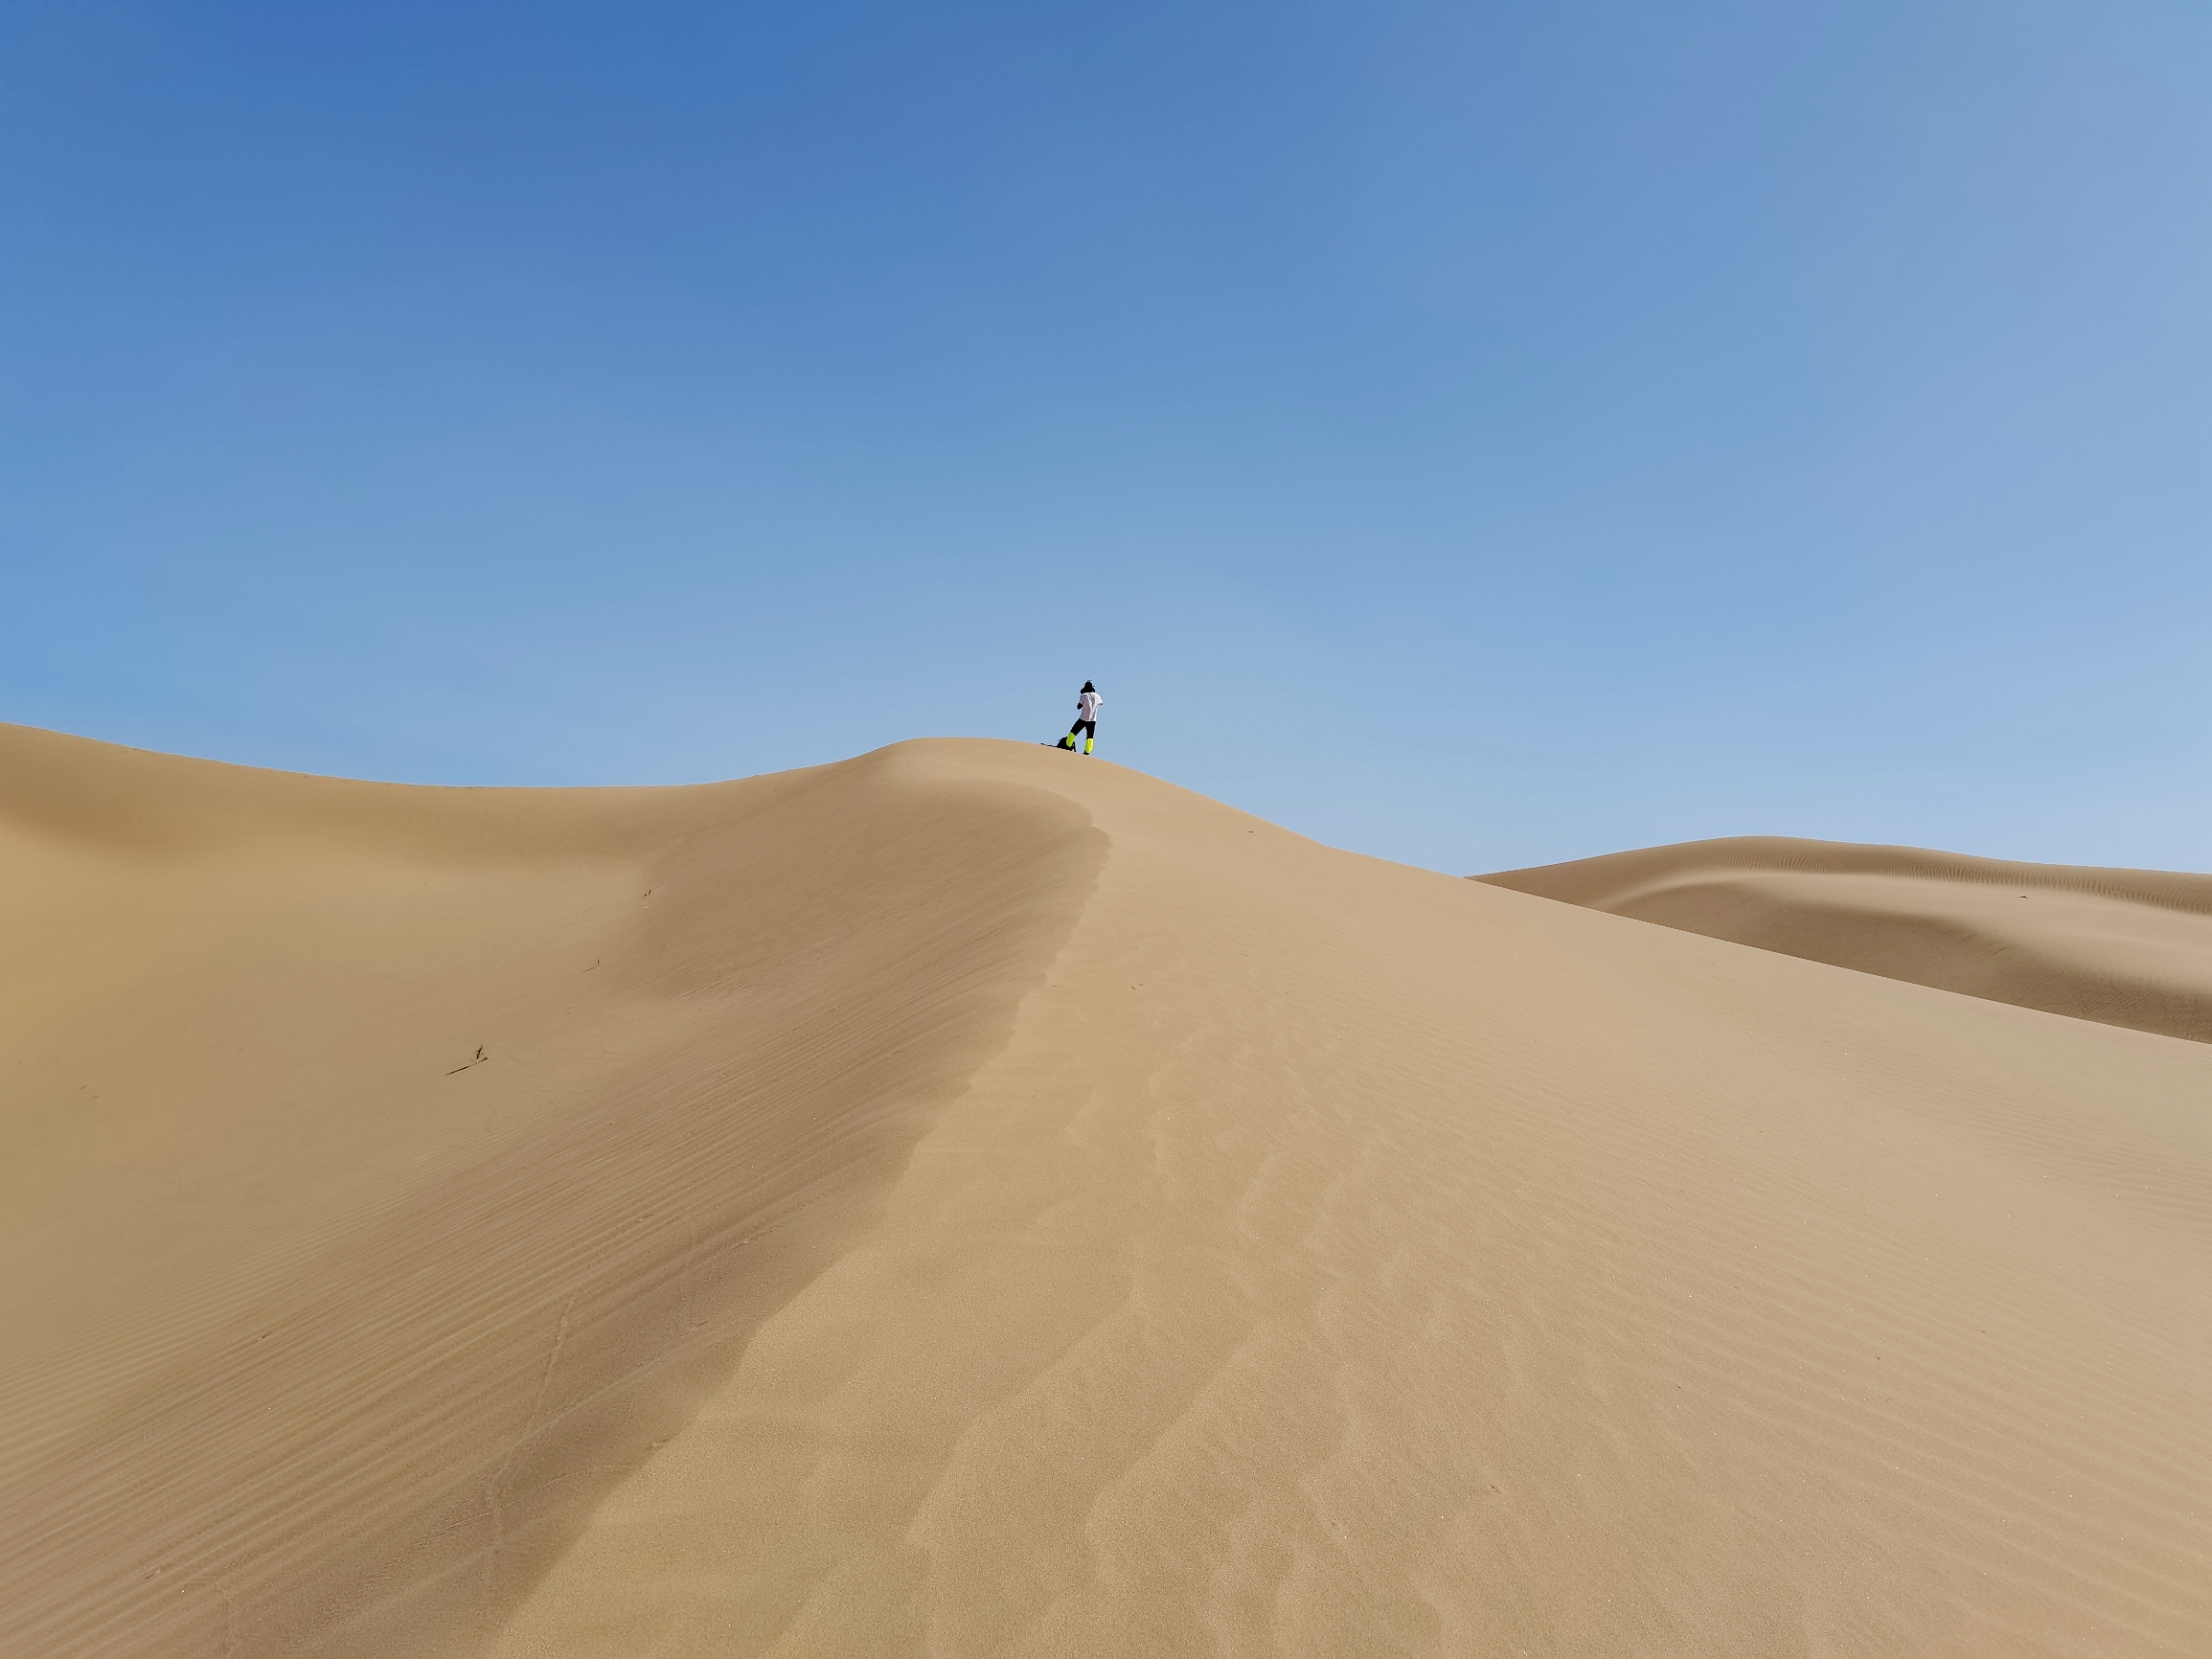 库布其沙漠徒步之旅——集合、启程、越过黑夜